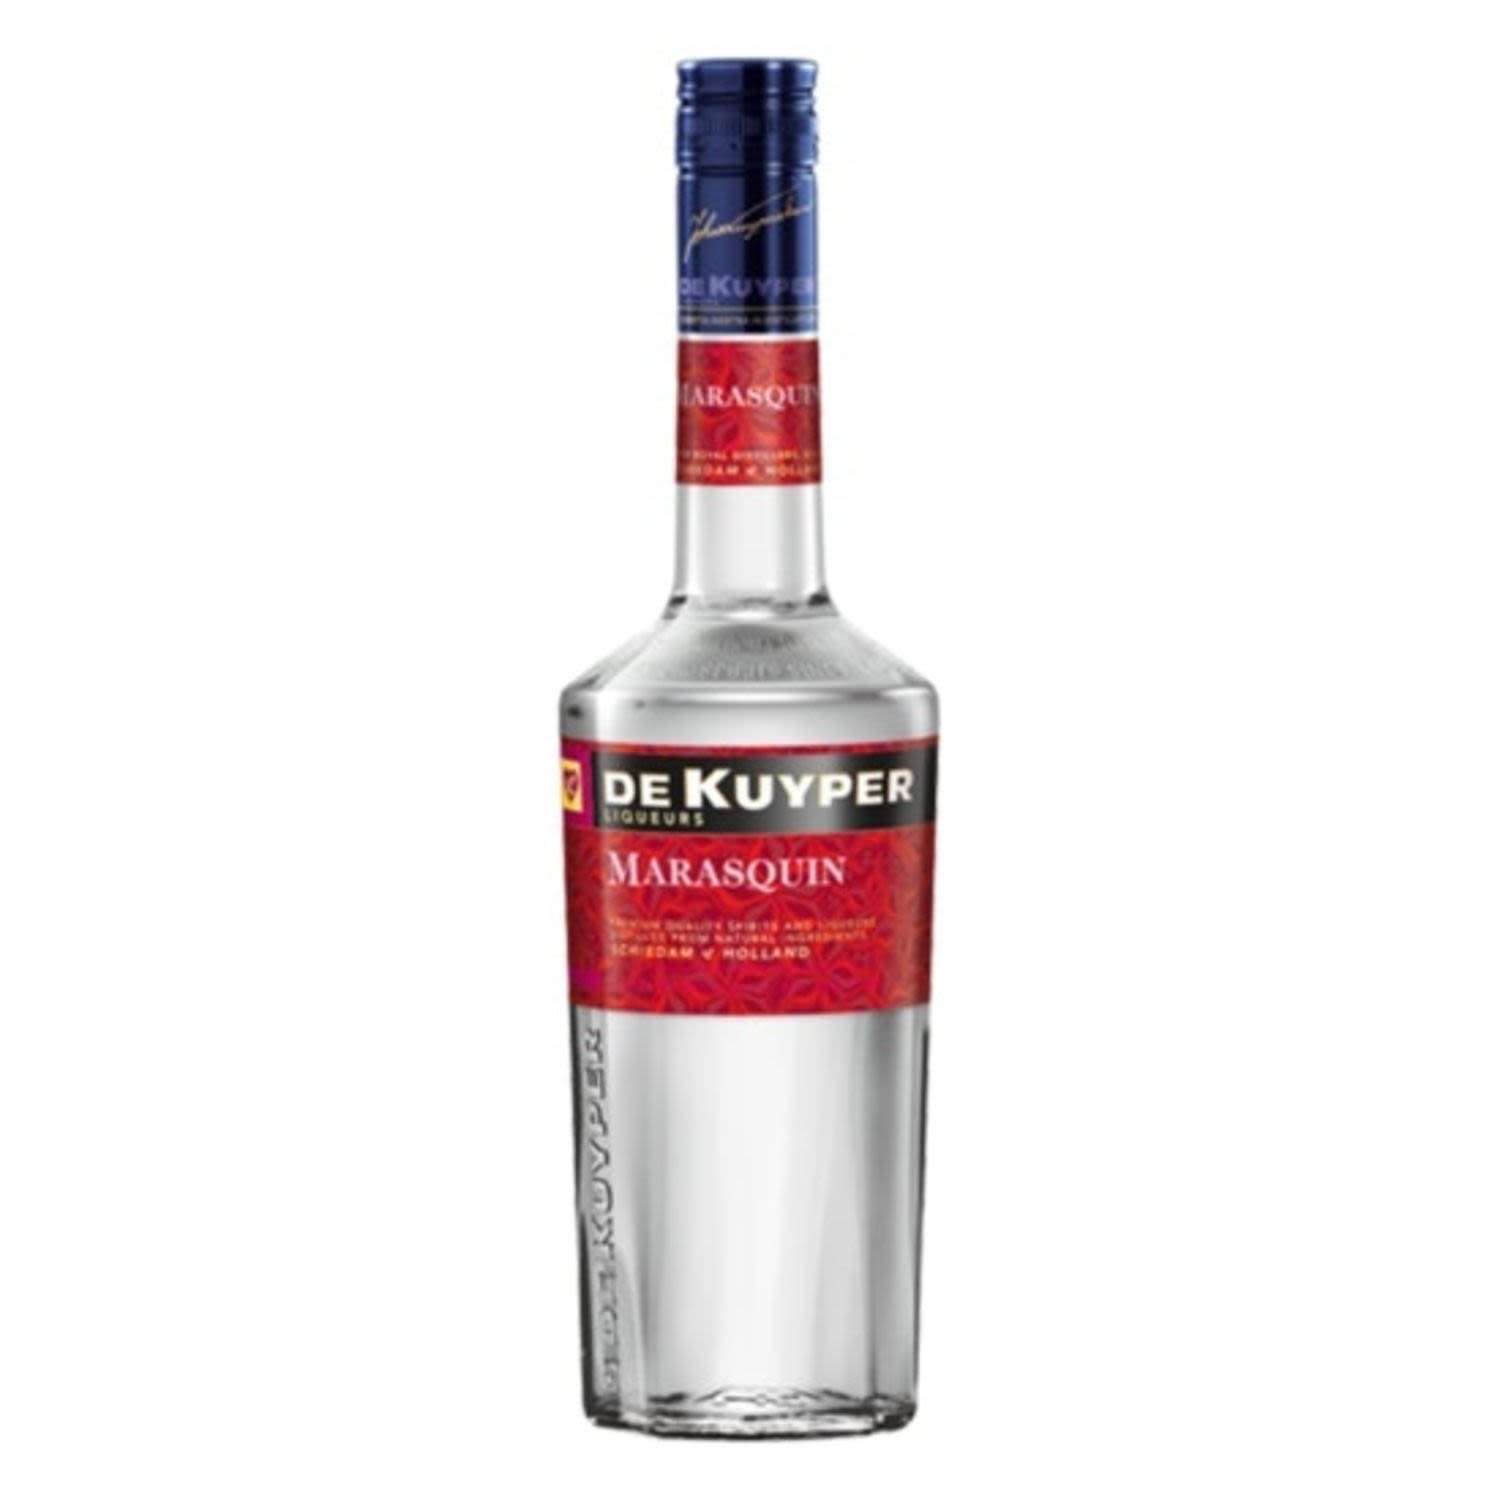 De Kuyper Maraschino 500mL Bottle